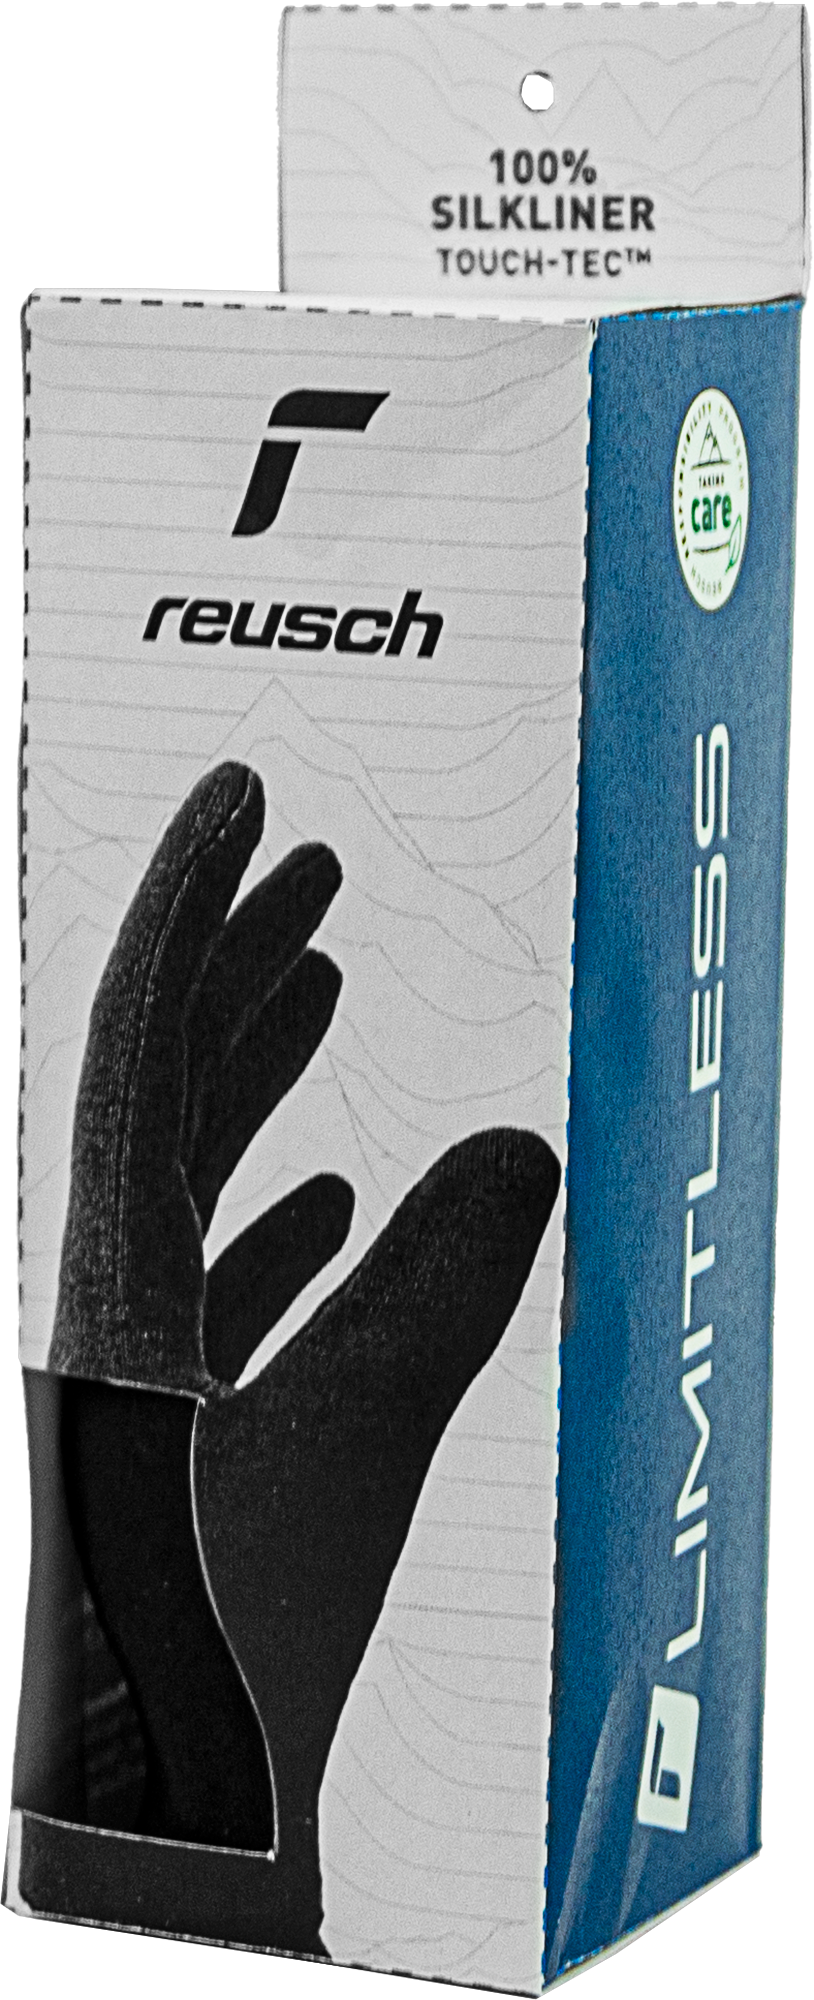 liner Reusch Silk TOUCH-TEC